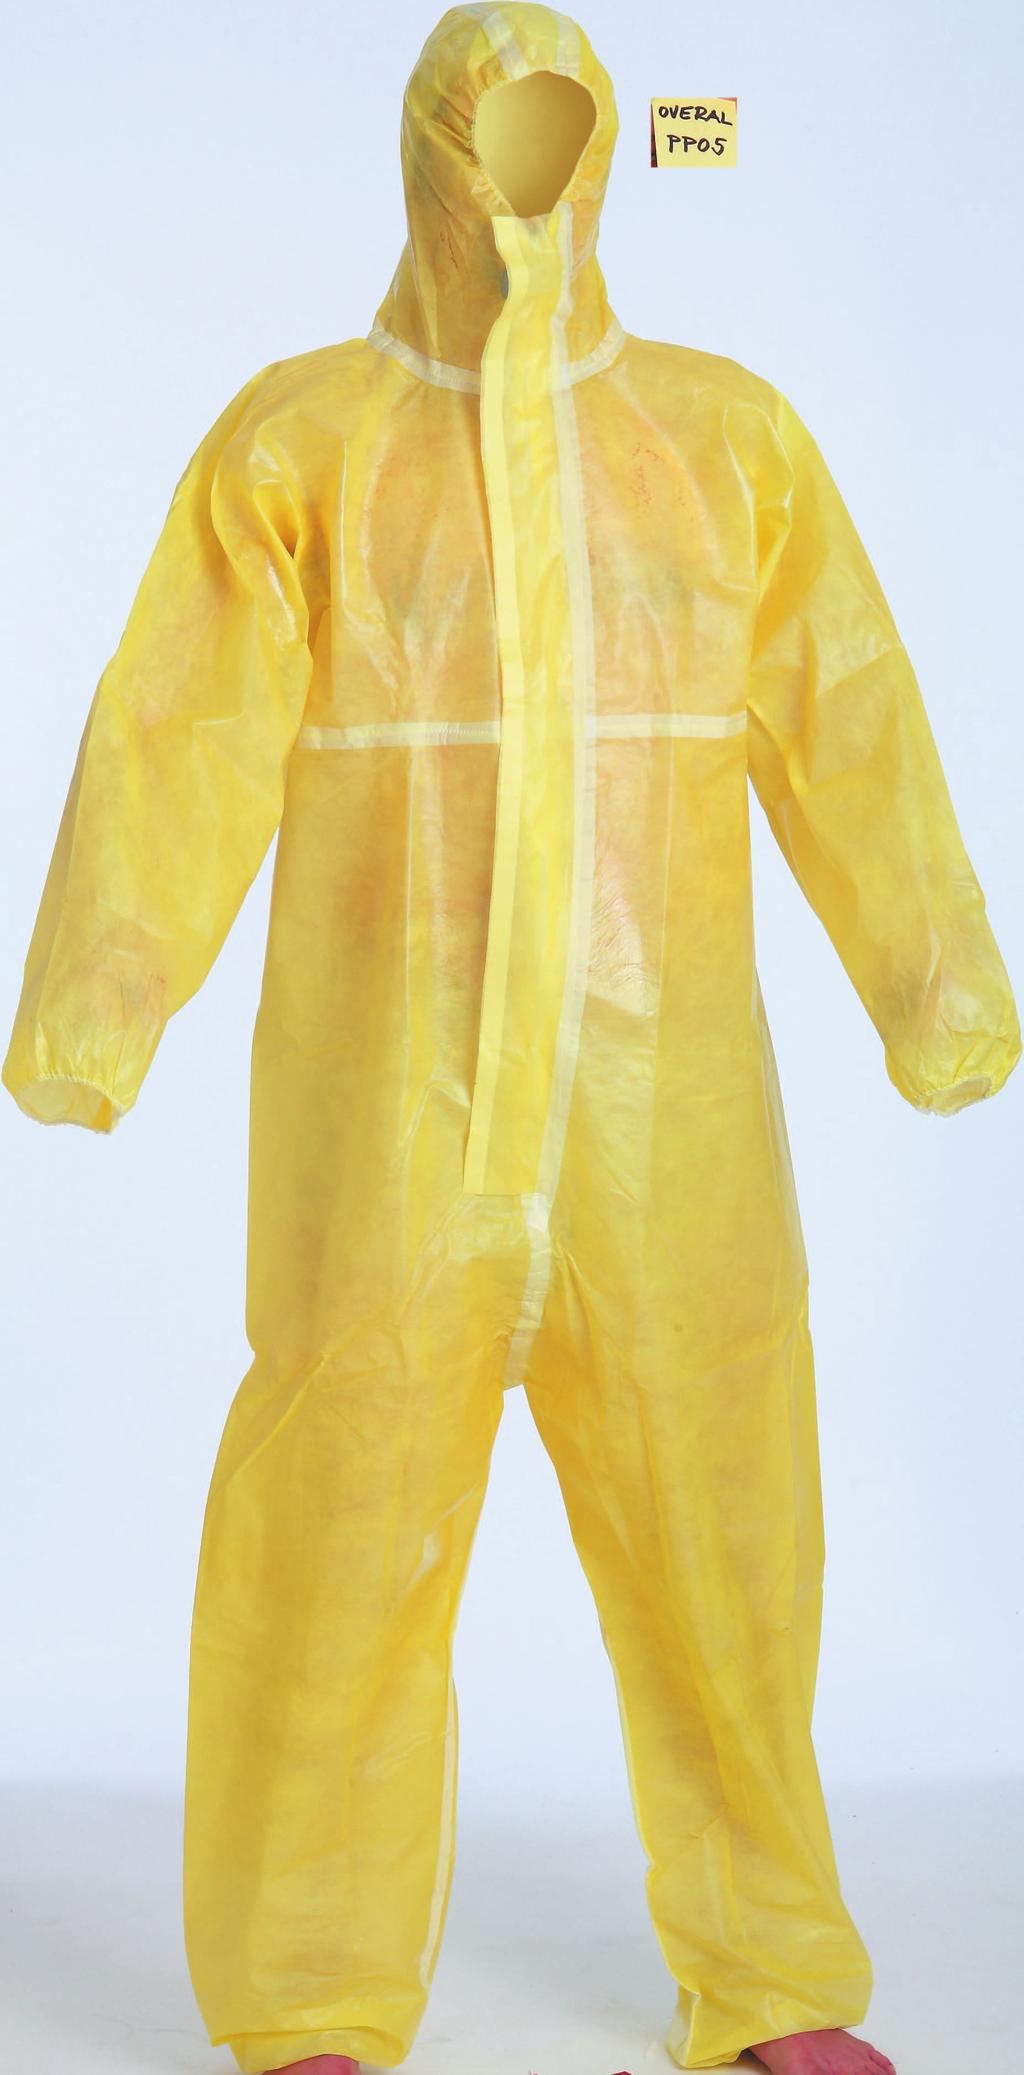 03_Odevy07_070-130.qxd 7/12/07 2:46 PM Str. 122 ODĚVY ochranné overaly protective CLOTHING CHEMSAFE P5 Ochranný oblek s kapucí z netkaného polypropylenu s nepropustnou ochrannou vrsvou.